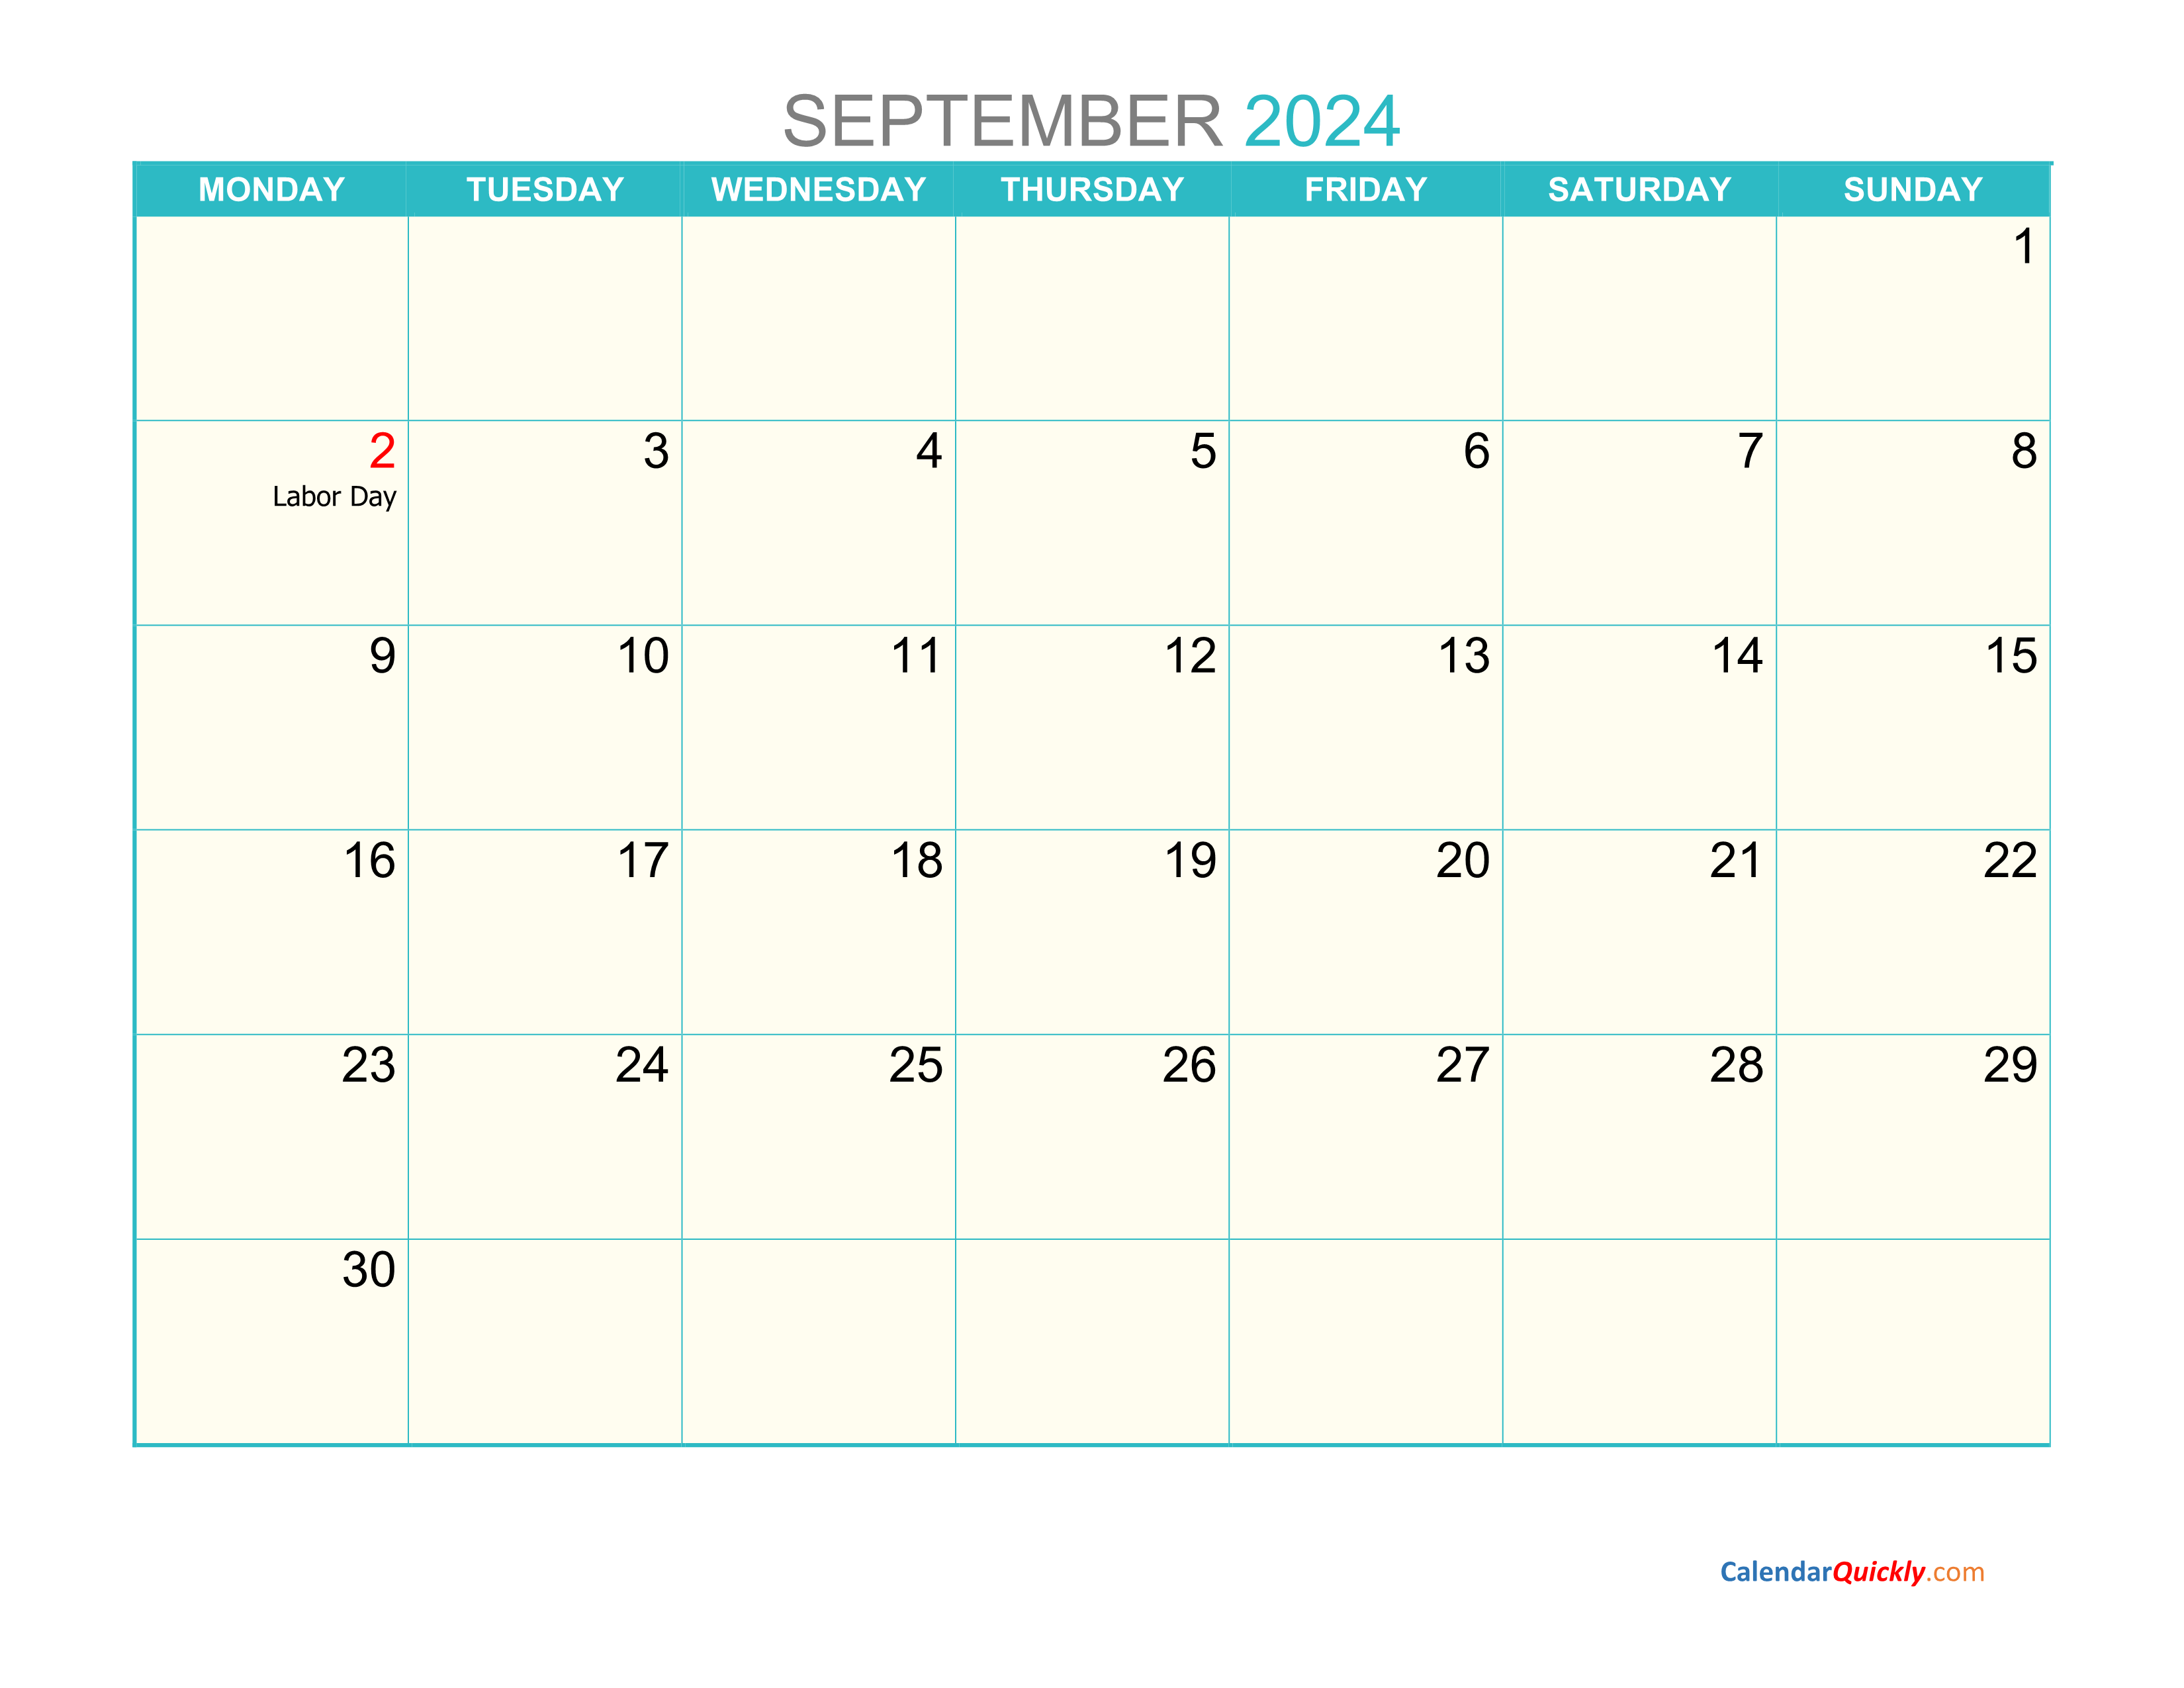 september-monday-2024-calendar-printable-calendar-quickly